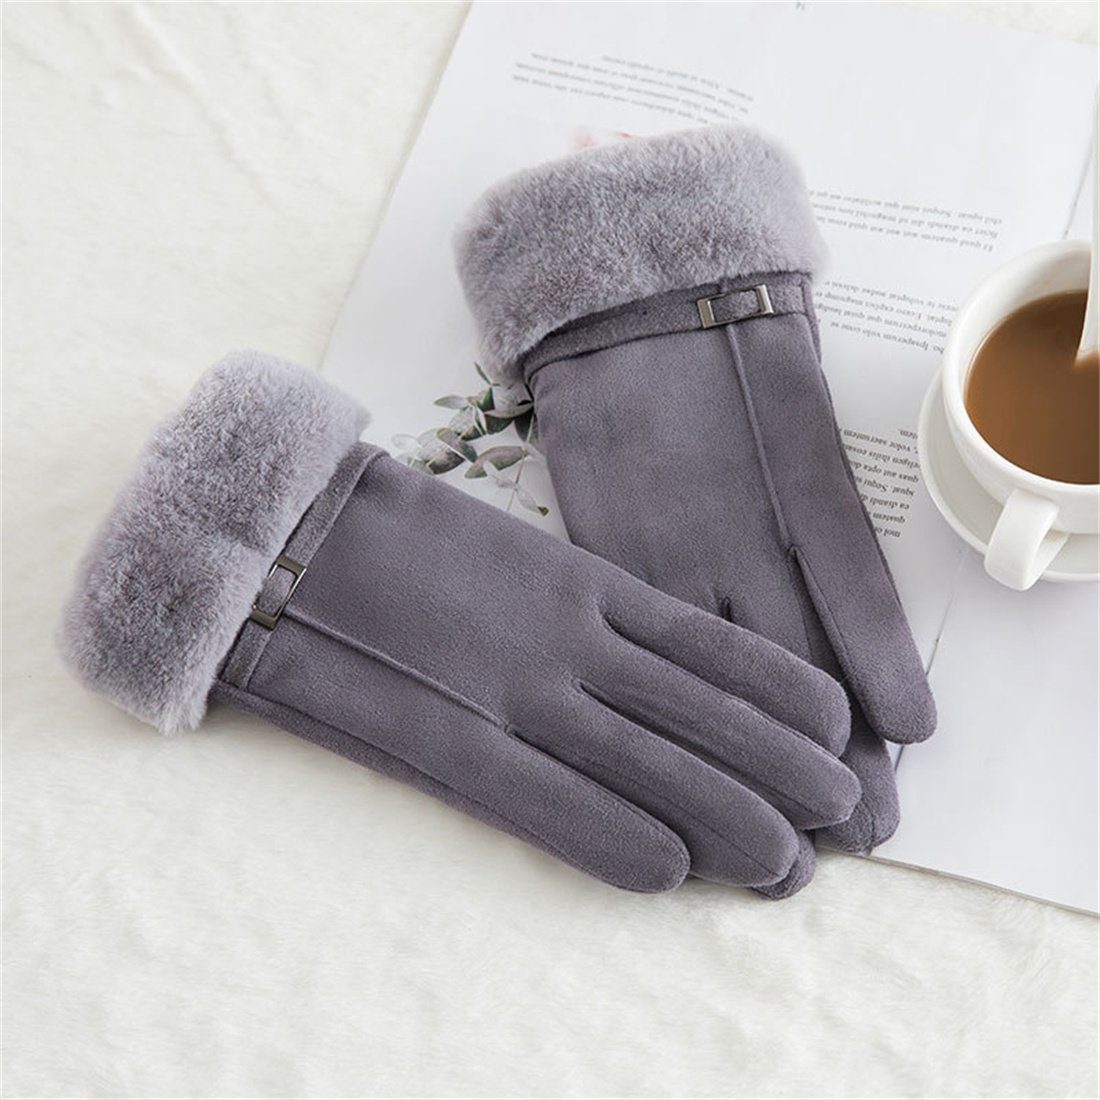 DÖRÖY warme Fleecehandschuhe Grau mitTouchscreen,gepolsterte Winterhandschuhe Damen-Reithandschuhe